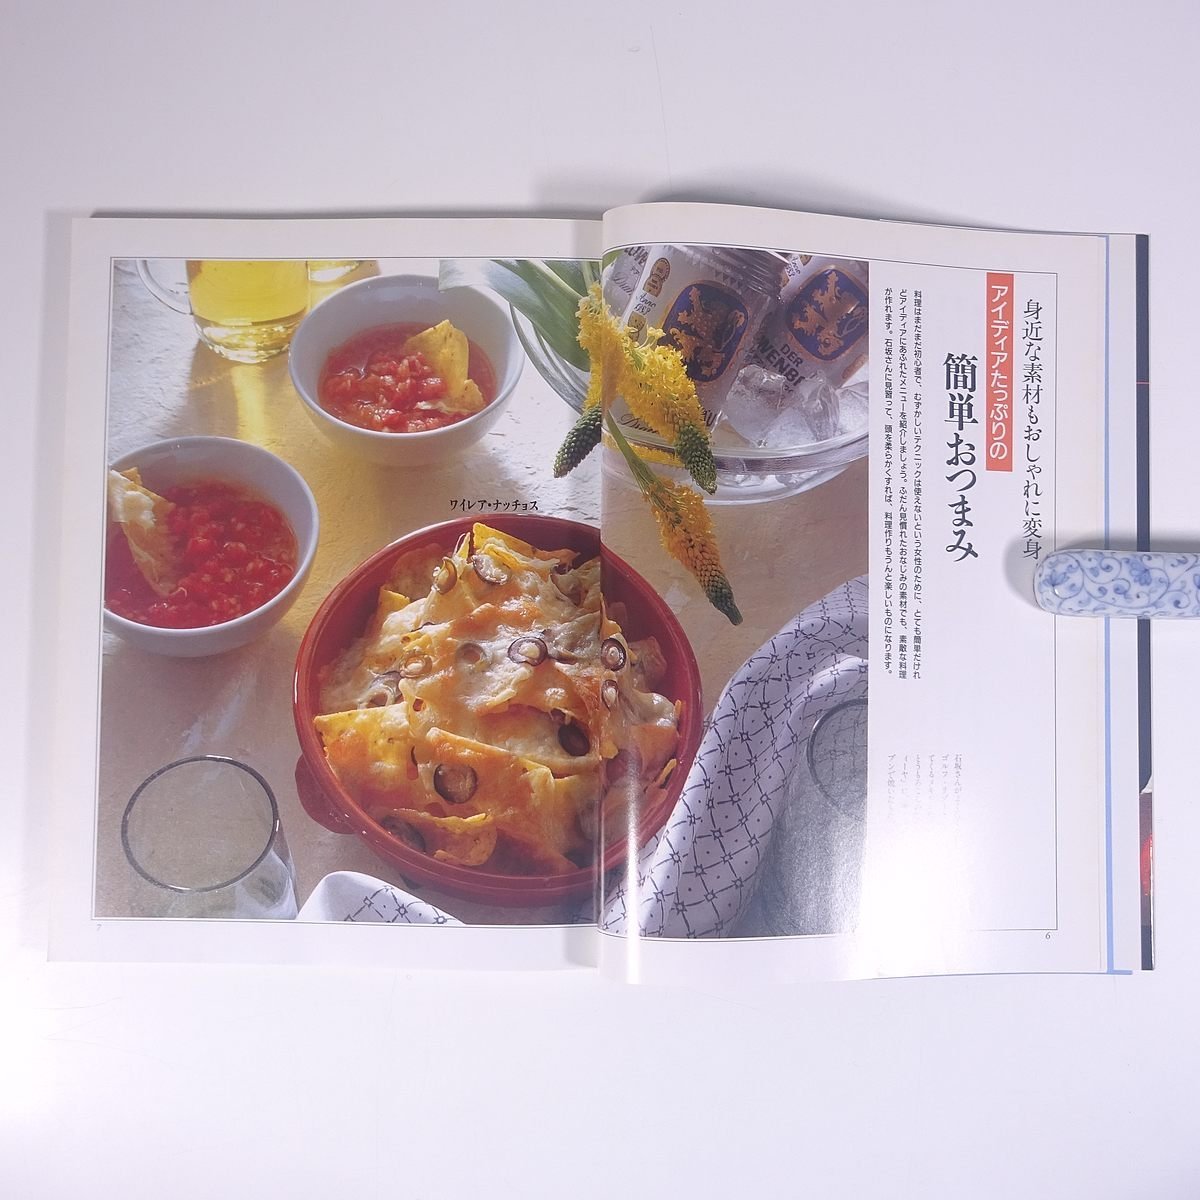 石坂浩二のおつまみ図鑑 講談社 1992 大型本 料理 献立 レシピ 家庭料理_画像7